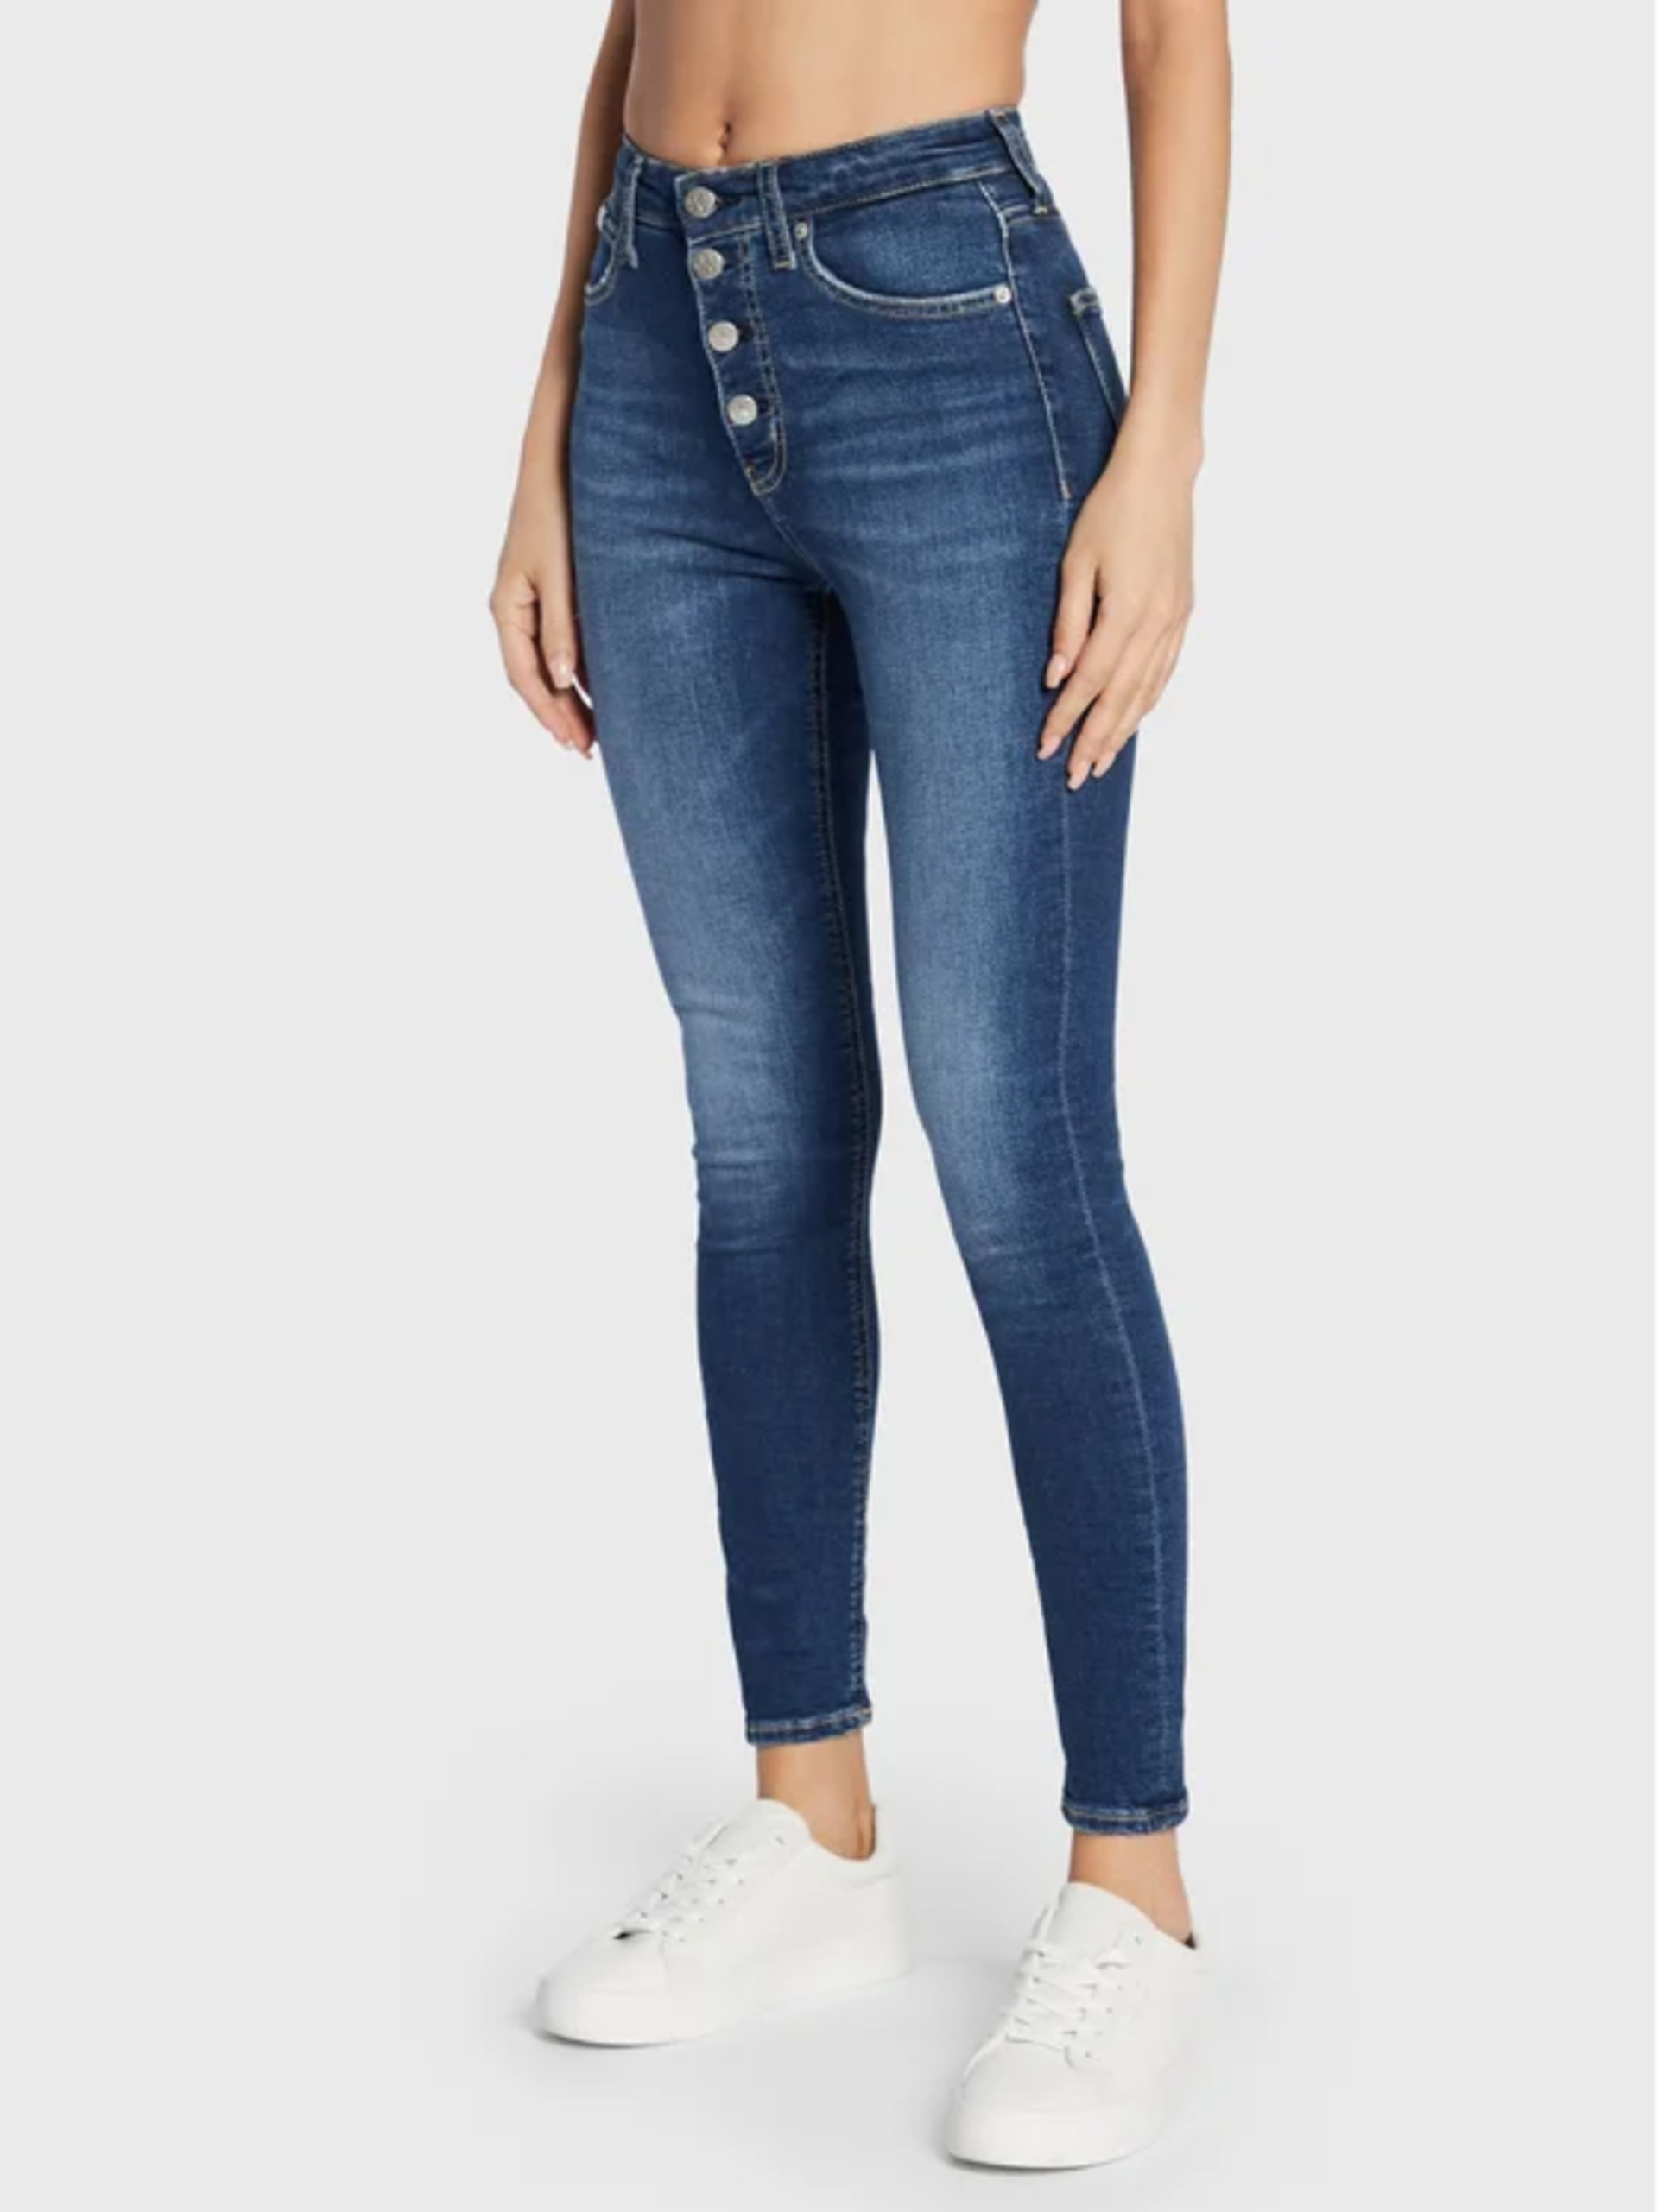 Calvin Klein dámské modré džíny - 26/NI (1BJ)